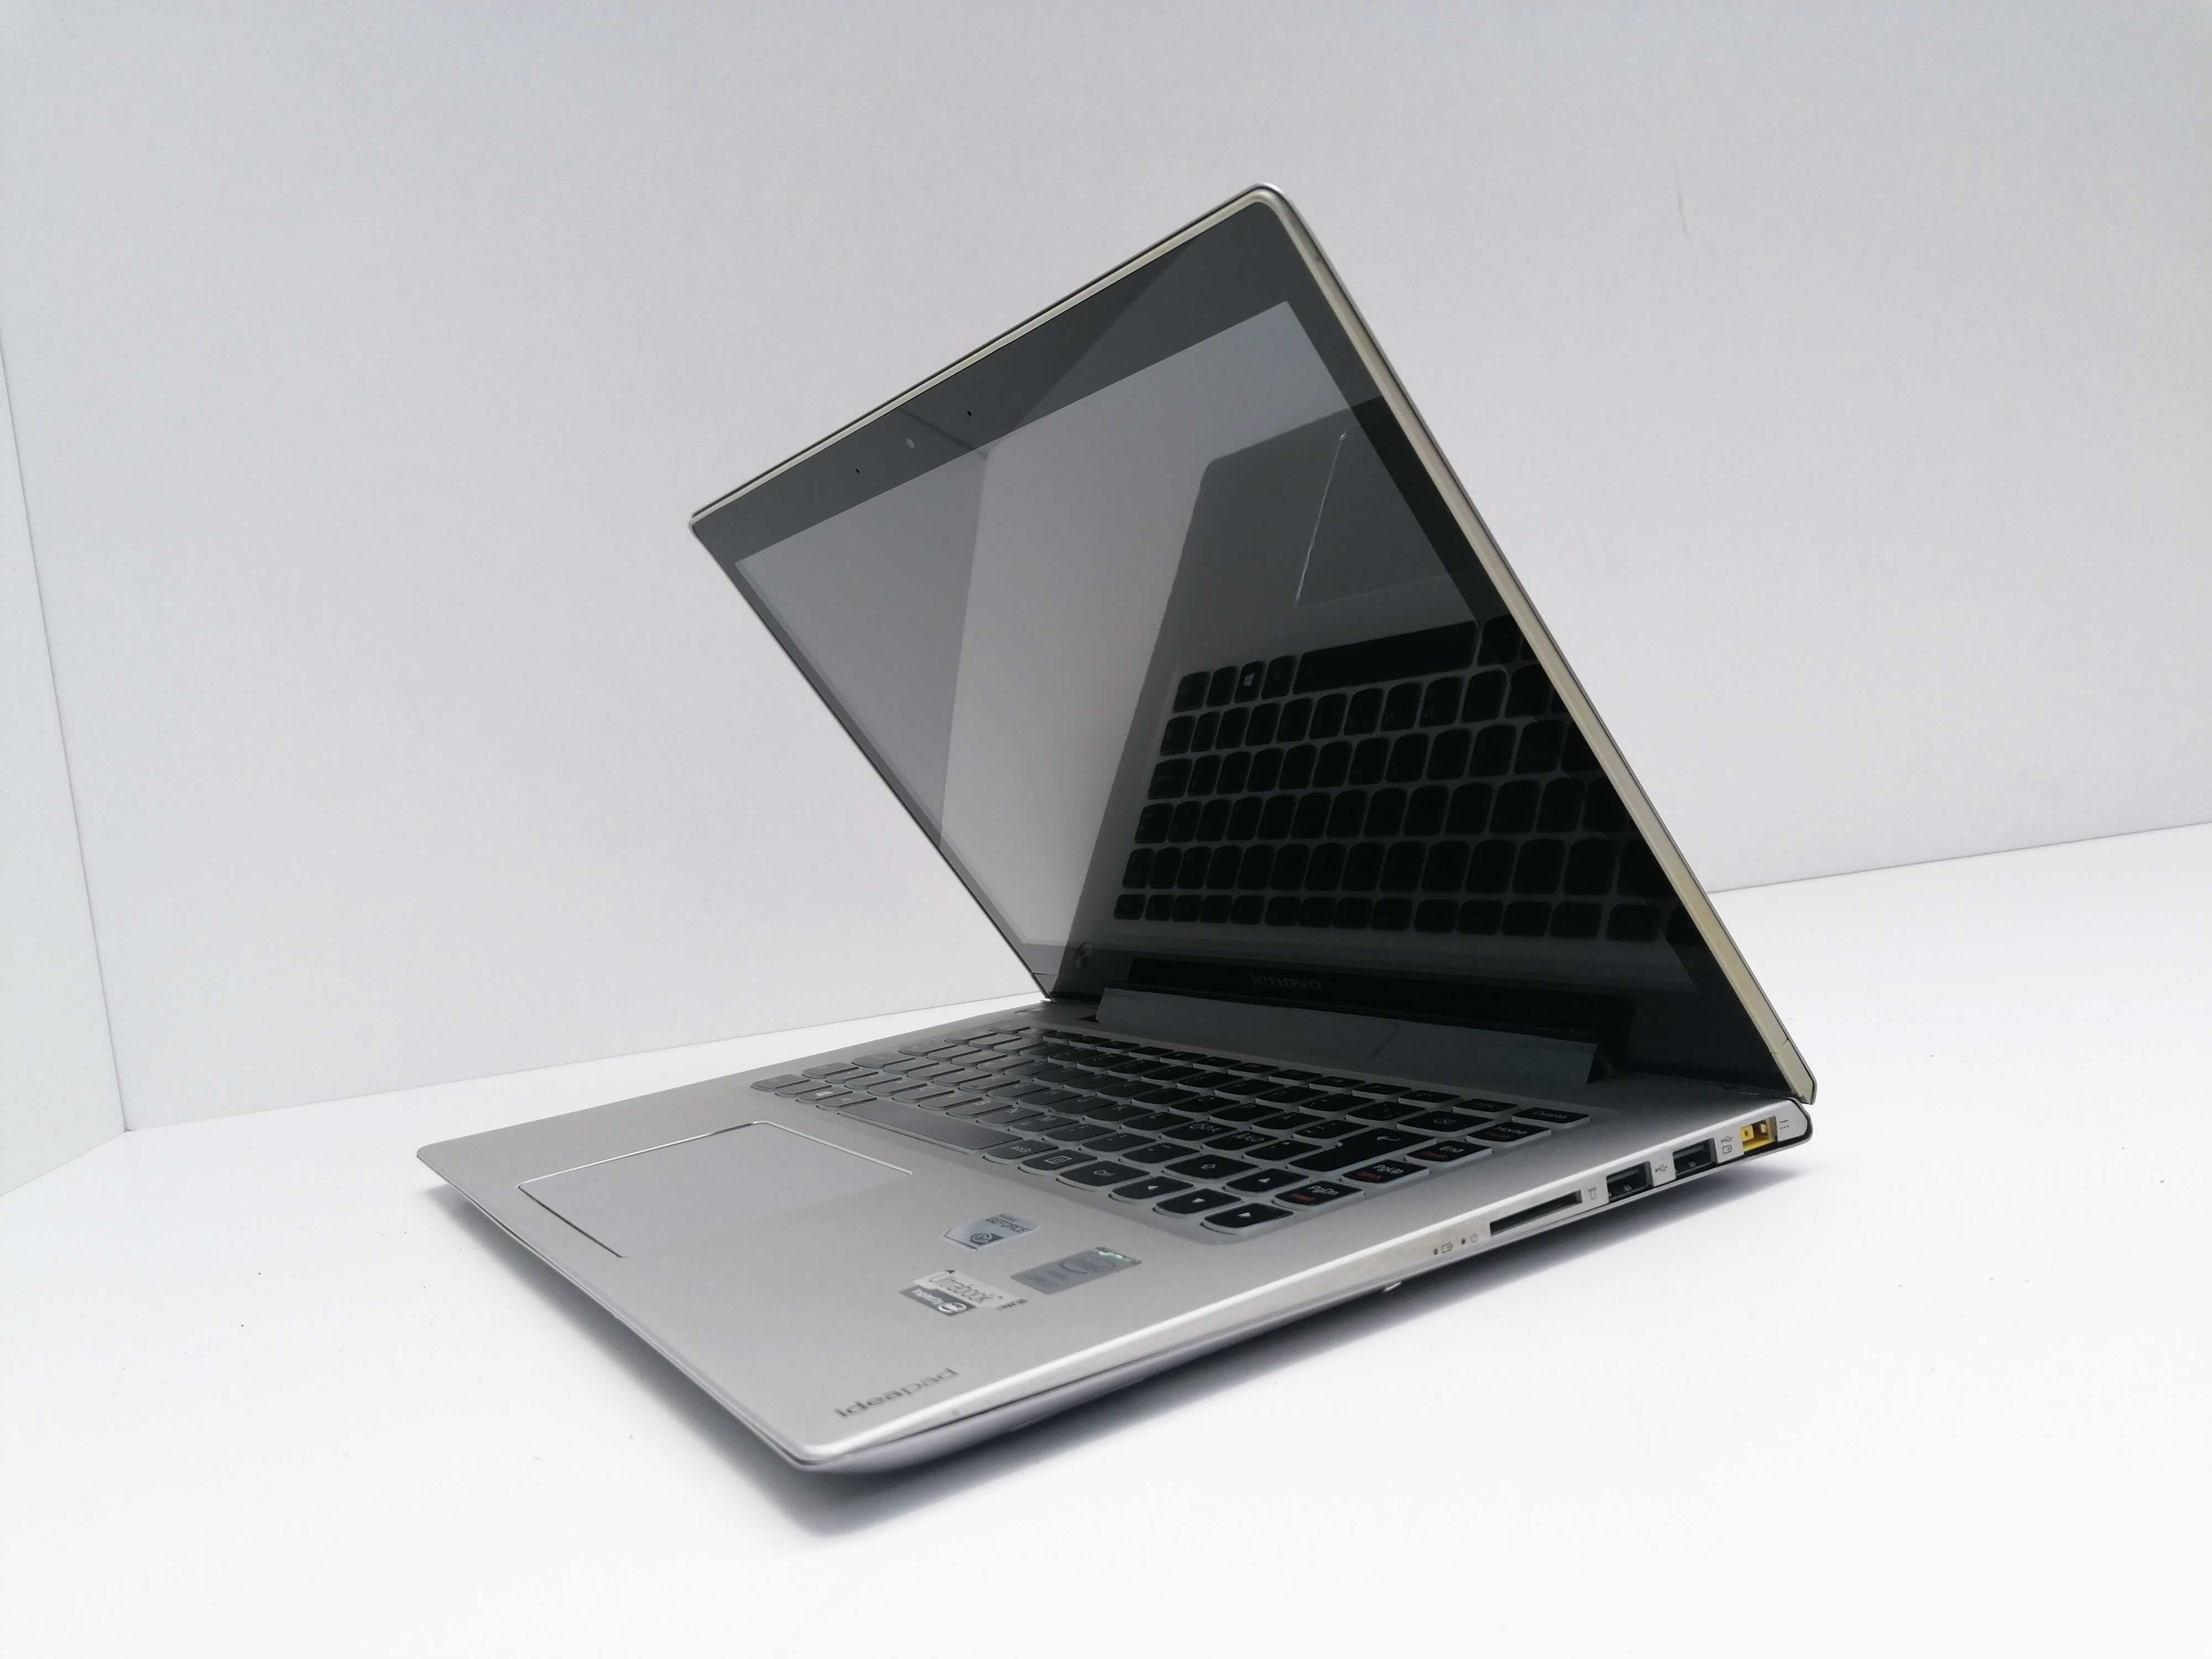 Lenovo ideapad U430 Touch FHD Touchscreen i7-4500U 8 GB RAM 128 GB SSD